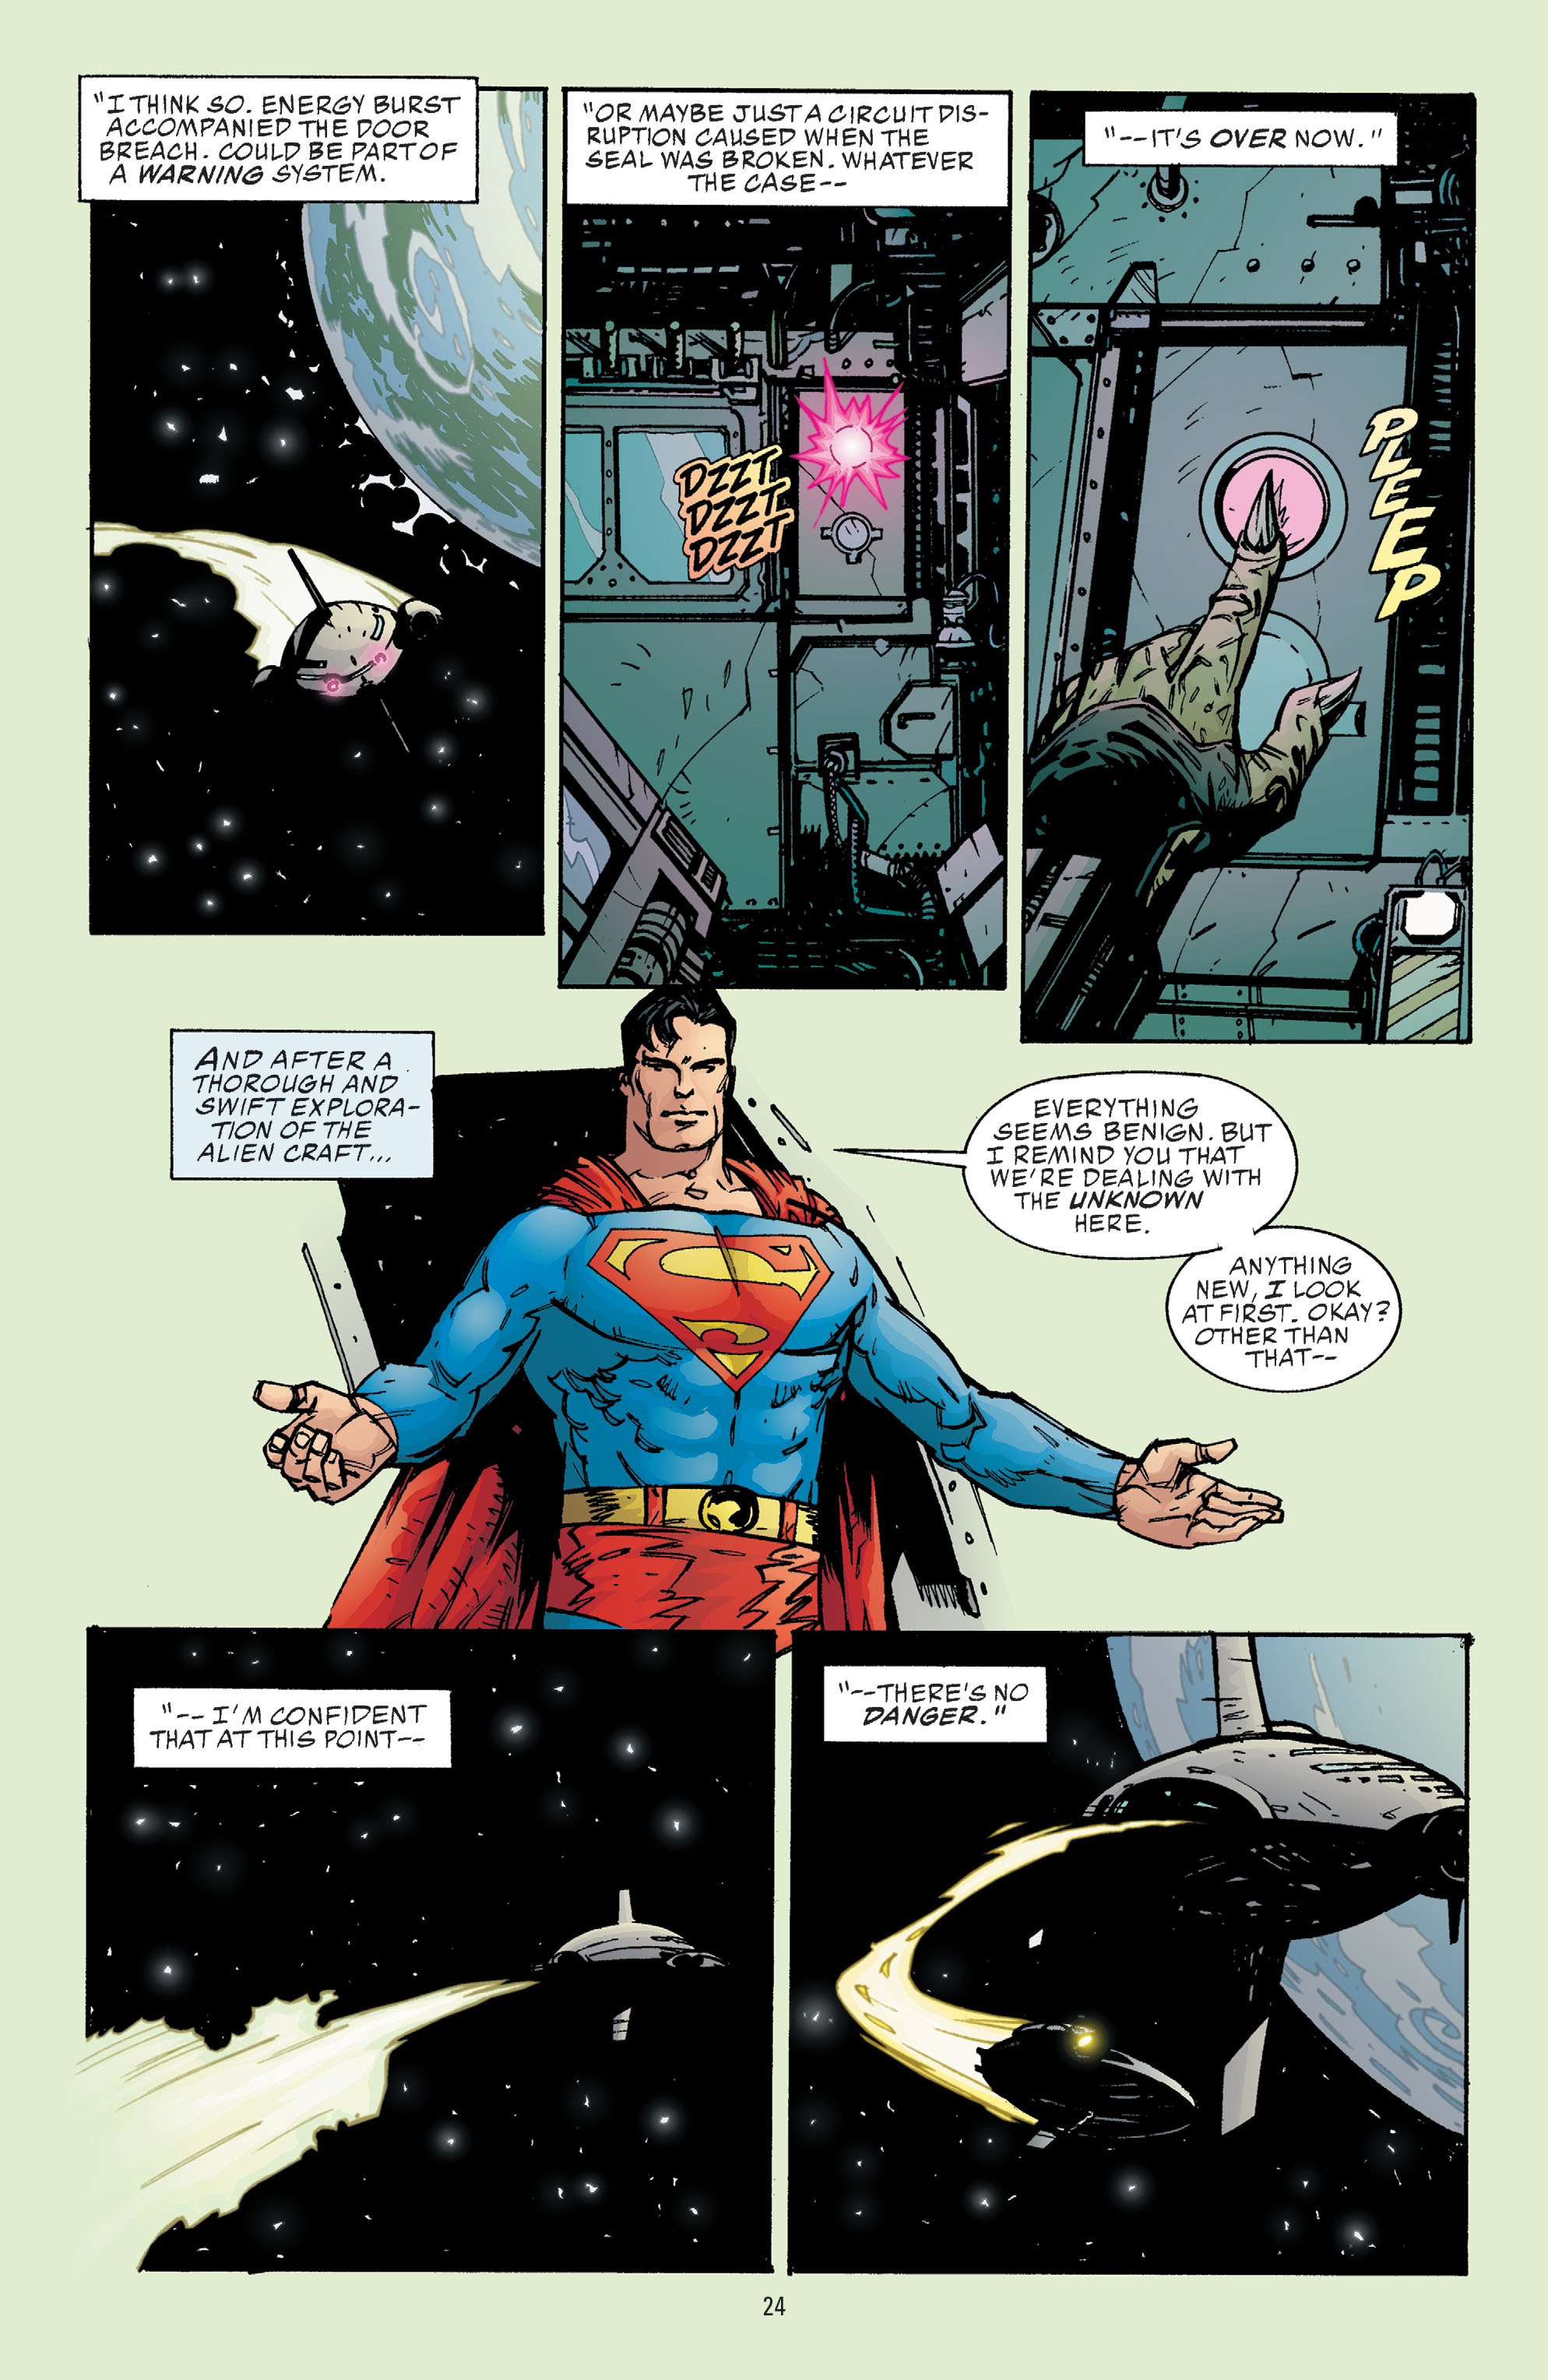 DC Comics/Dark Horse Comics: Justice League Full #1 - English 22